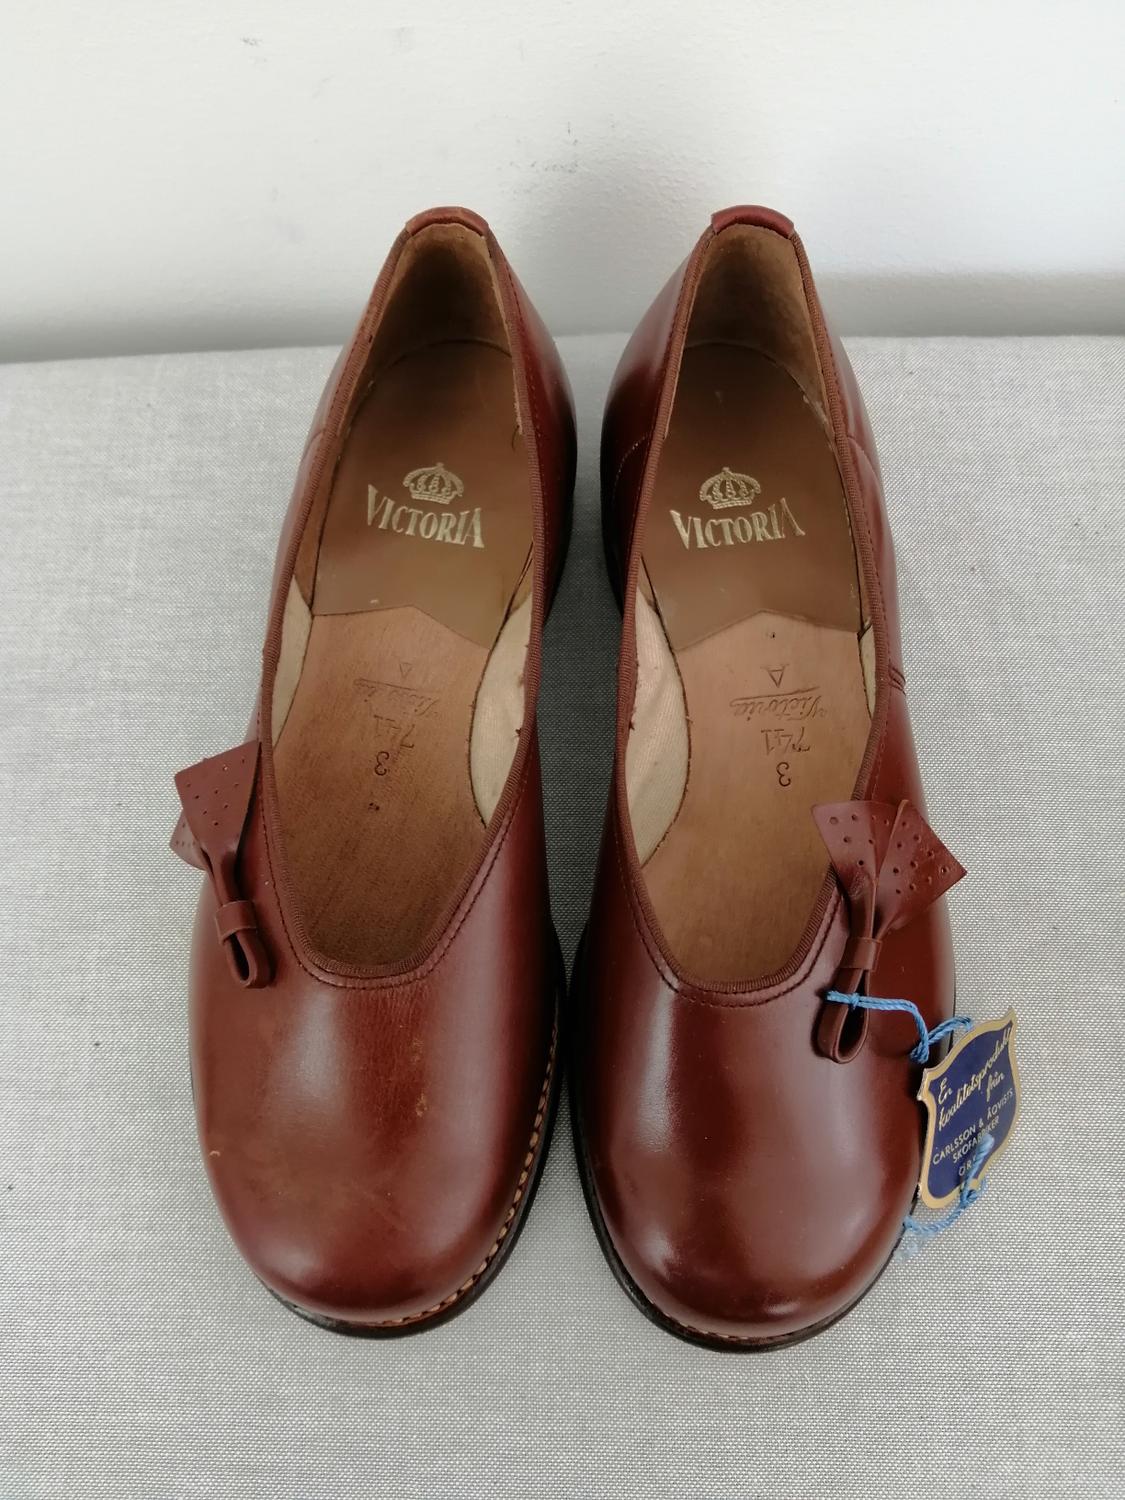 Vintage Victoria låg brun sko rosett sidan stl 3A ca 35